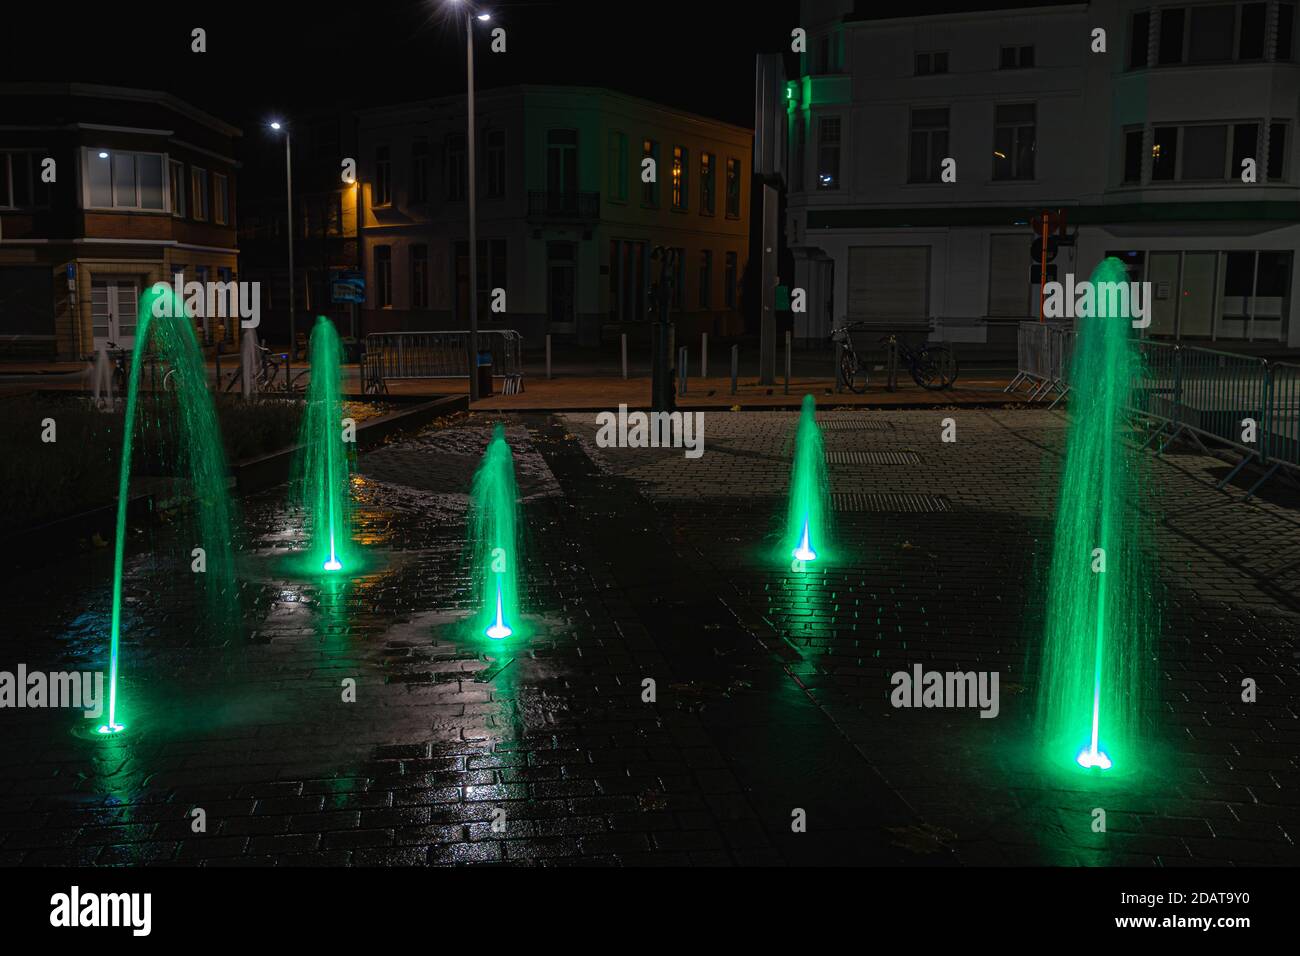 Fontaines sur le marché d'izegem la nuit. Image détaillée avec de l'eau verte dans une bonne prise de vue Banque D'Images